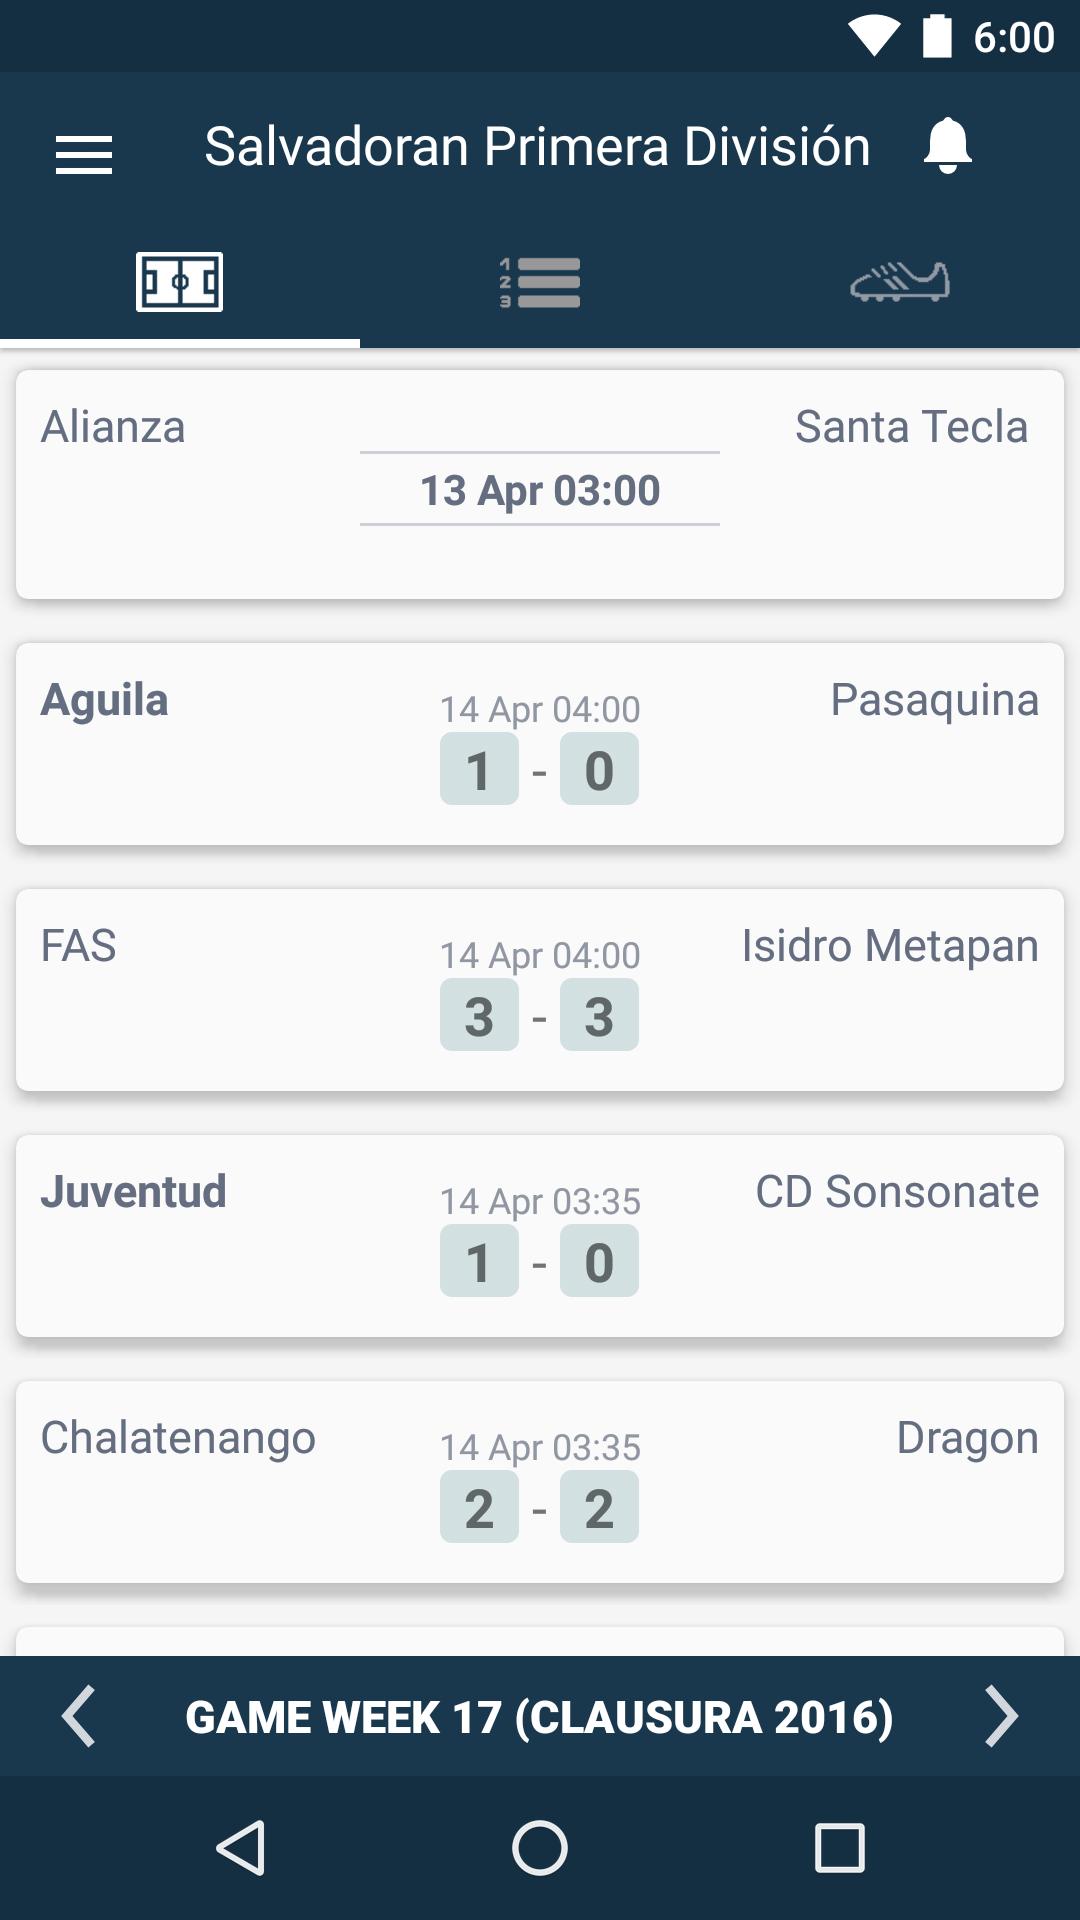 El Salvador Football League - Primera División for Android - APK Download